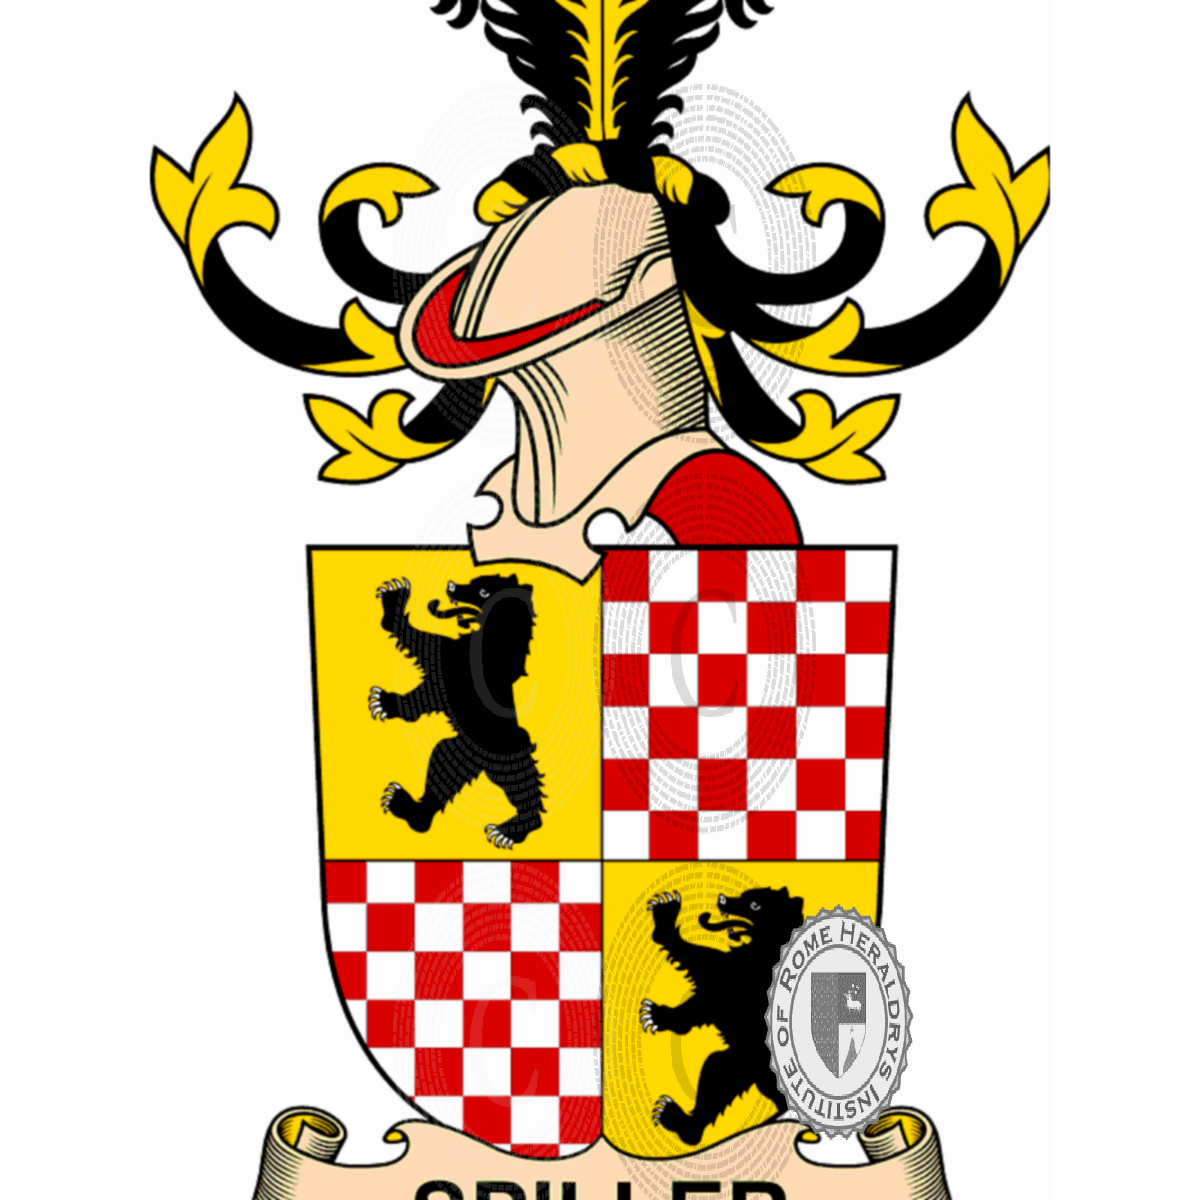 Coat of arms of familySpiller